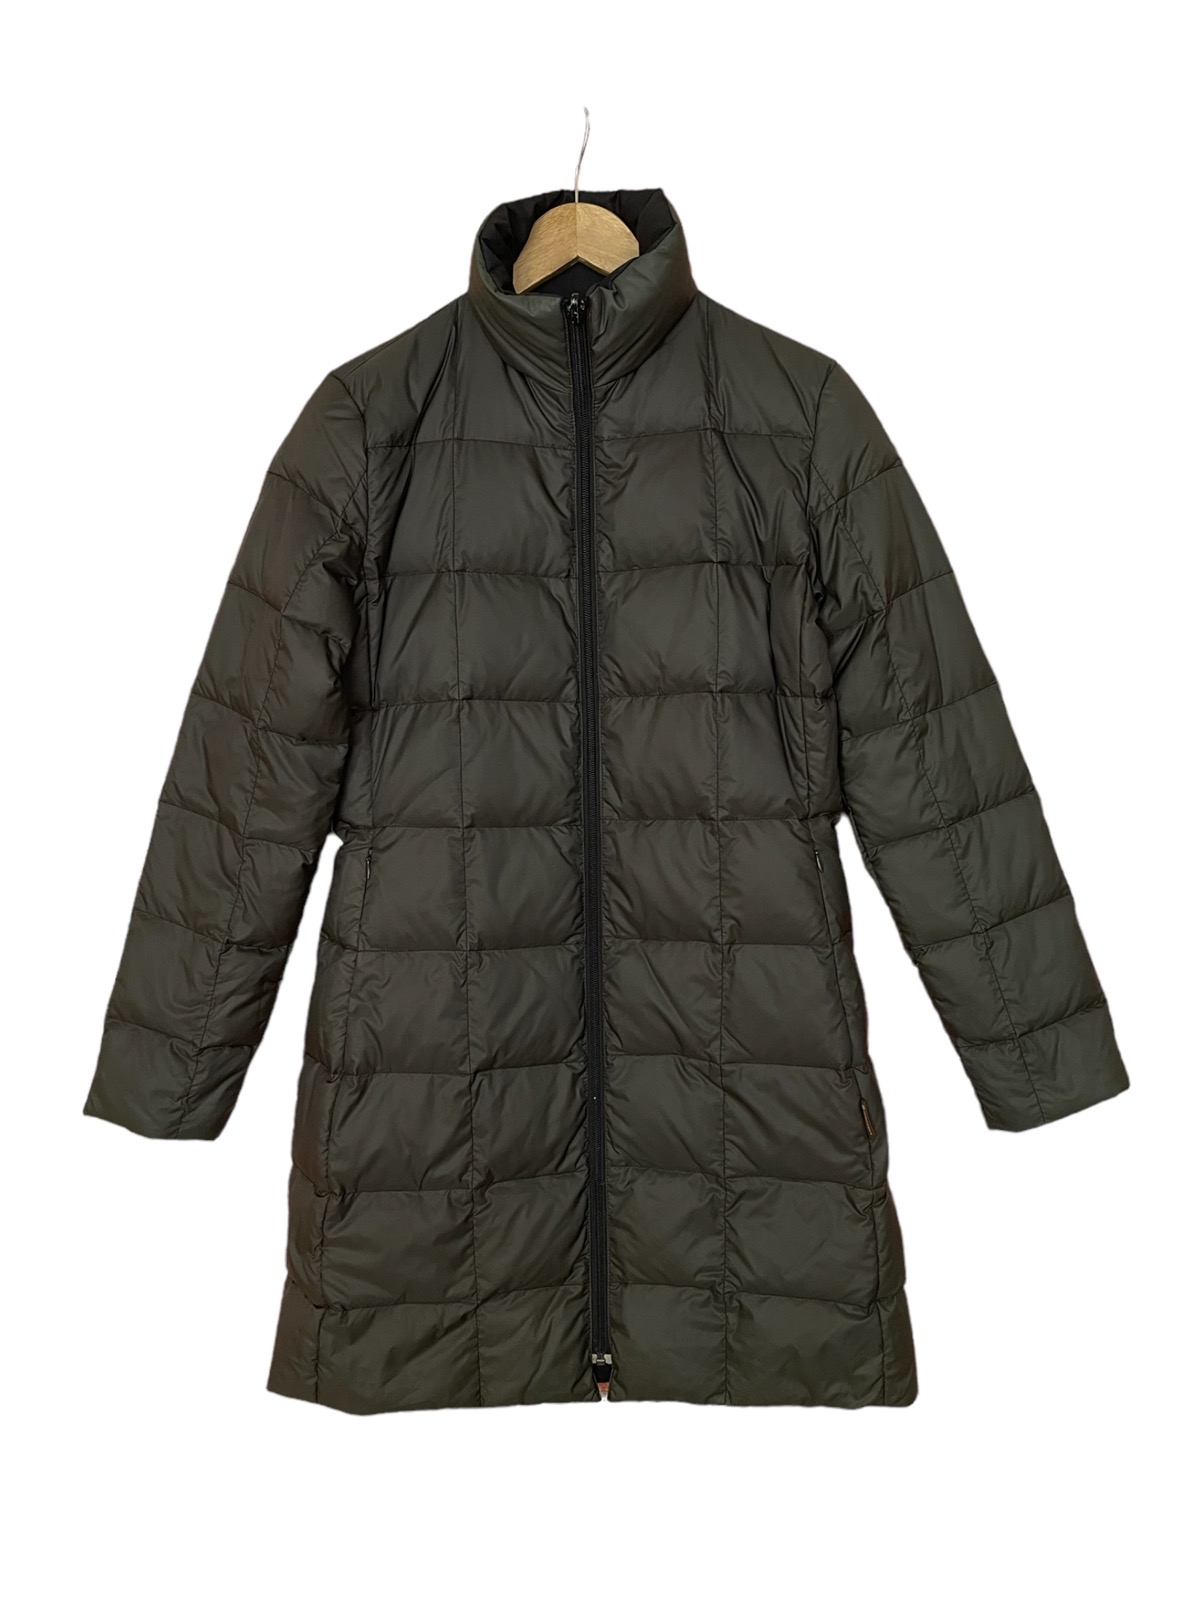 Moncler long puffer jacket reversible down jacket - 2